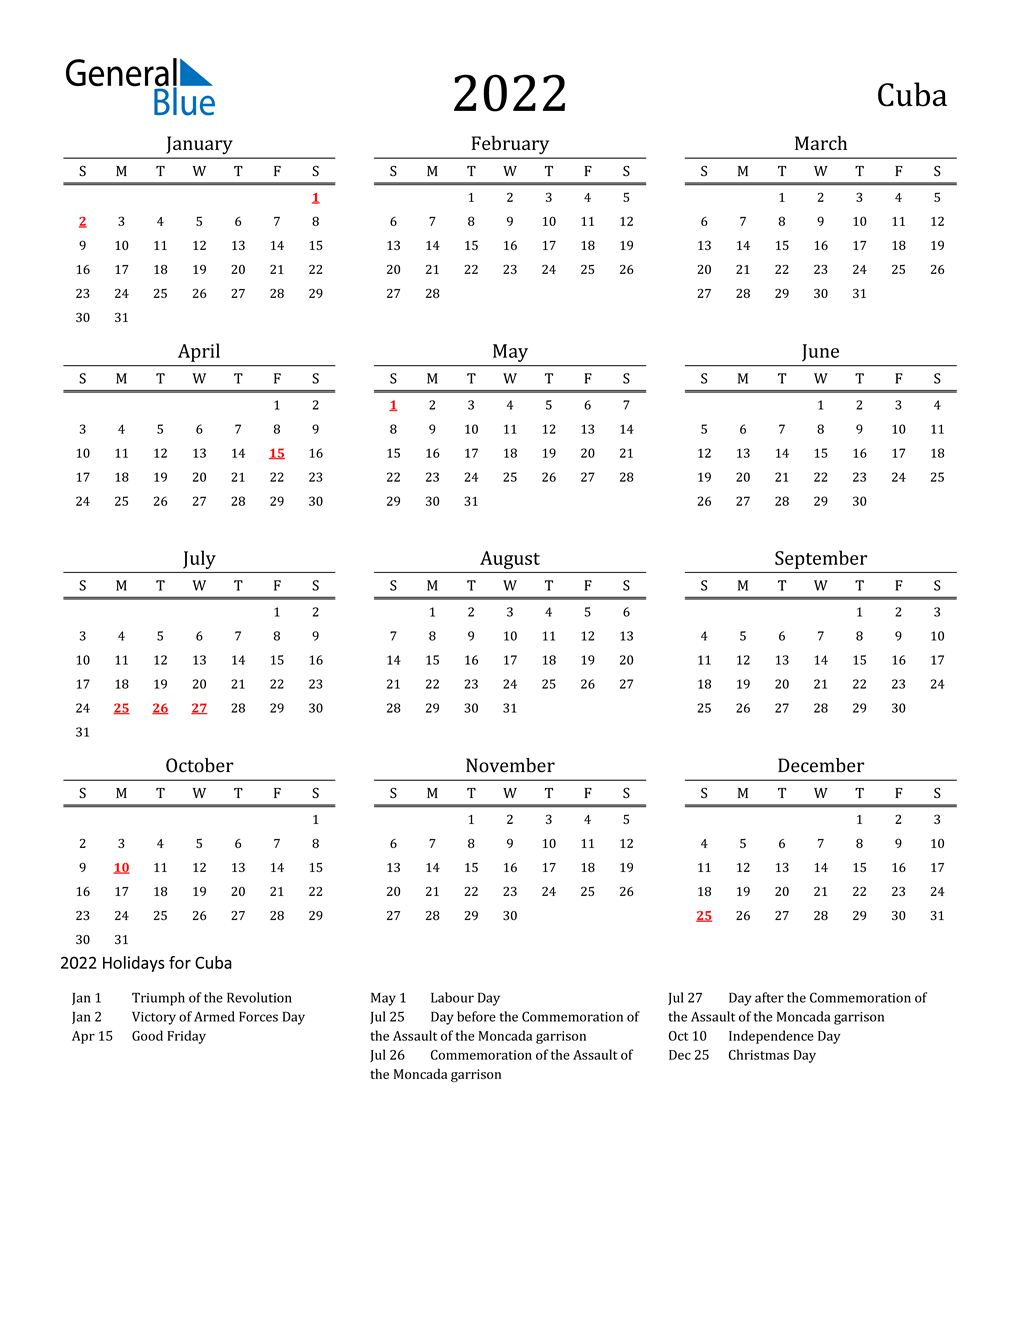 Cu Calendar 2022 2022 Cuba Calendar With Holidays